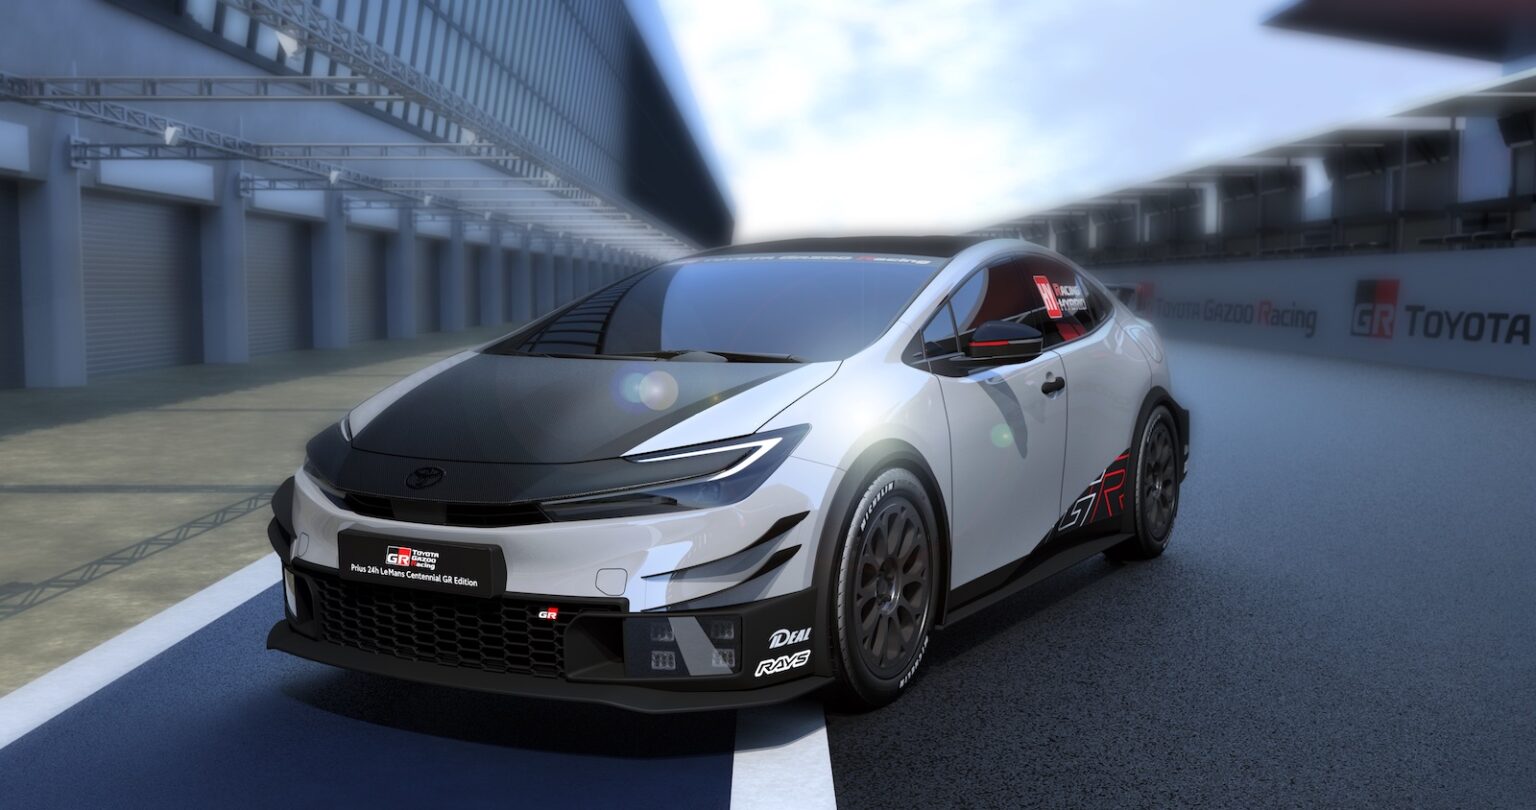 Toyota GR Prius - future cars